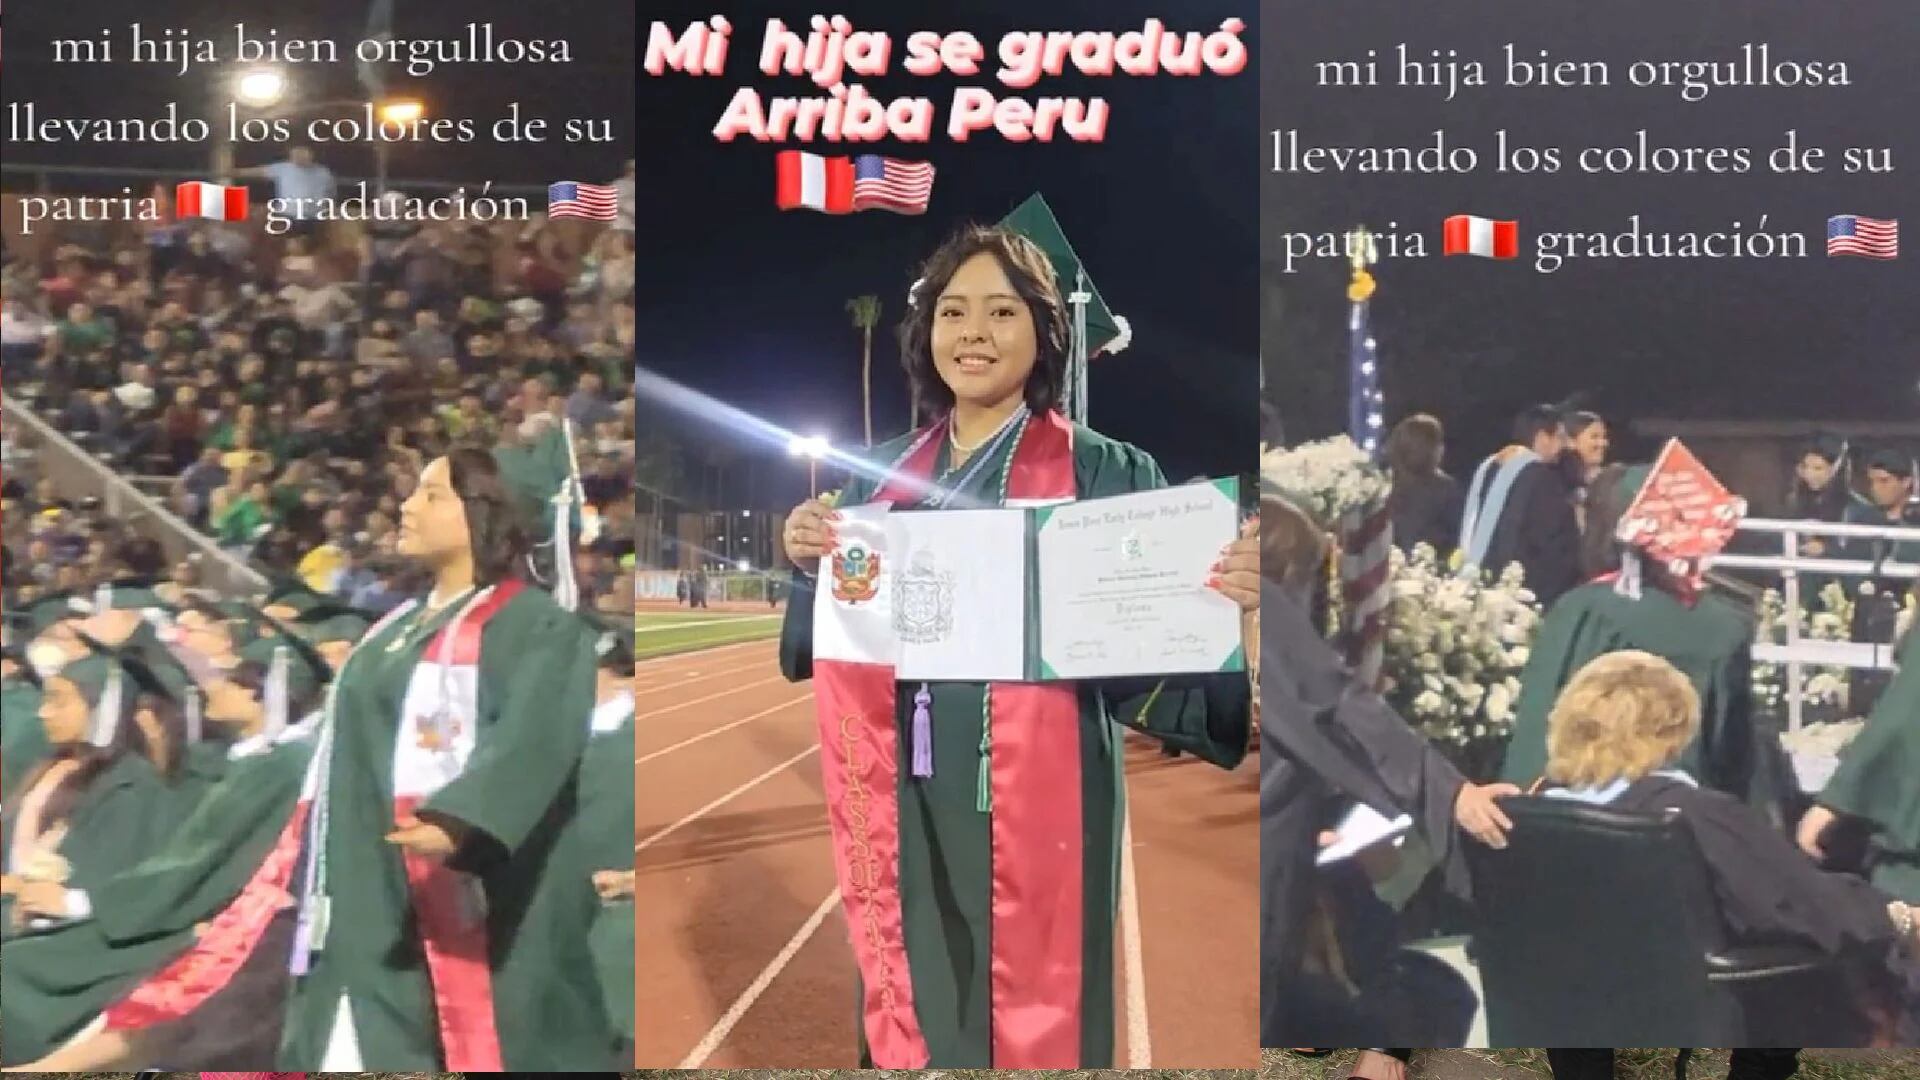 En un emotivo video compartido en TikTok, una peruana se gradúa en EE. UU. con un gesto que llena de orgullo a su comunidad. (TikTok / @pattywilhoite)